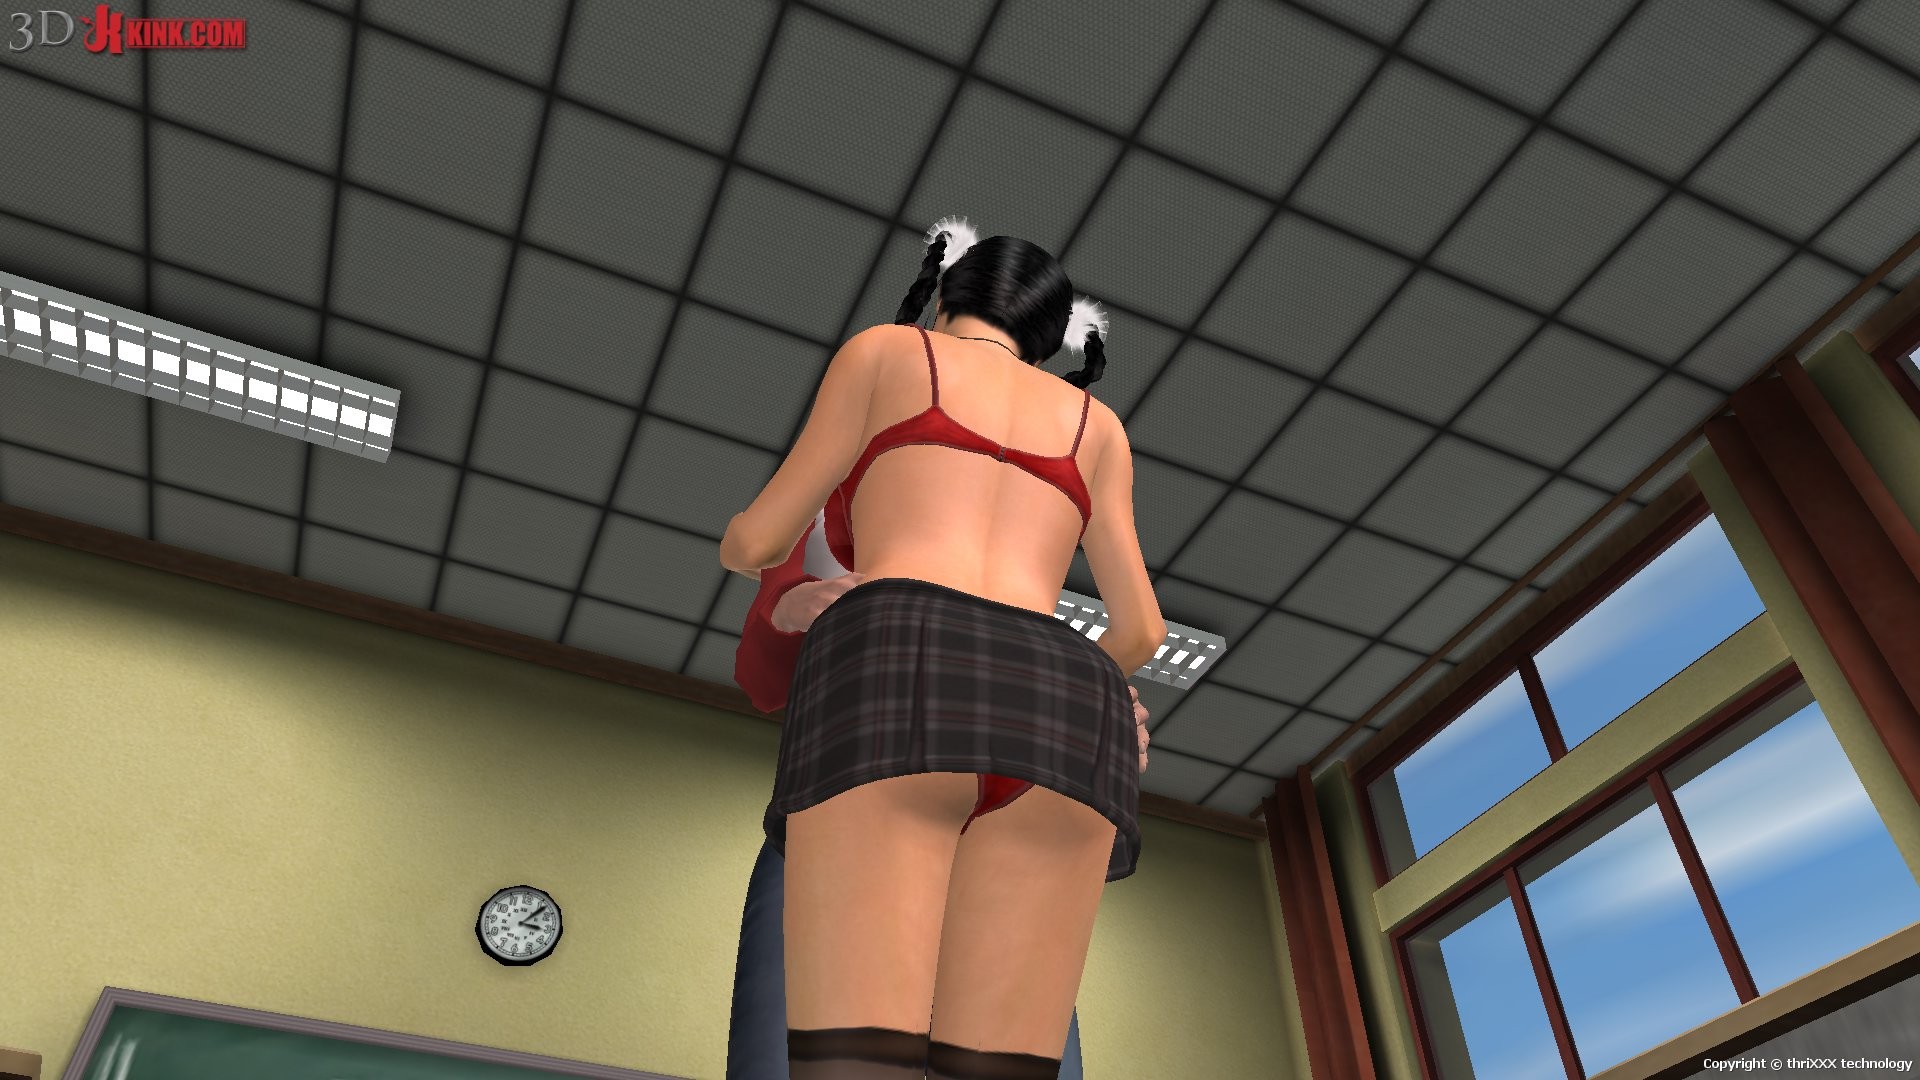 Action sexuelle bdsm chaude créée dans un jeu sexuel 3d fétichiste virtuel !
 #69597664